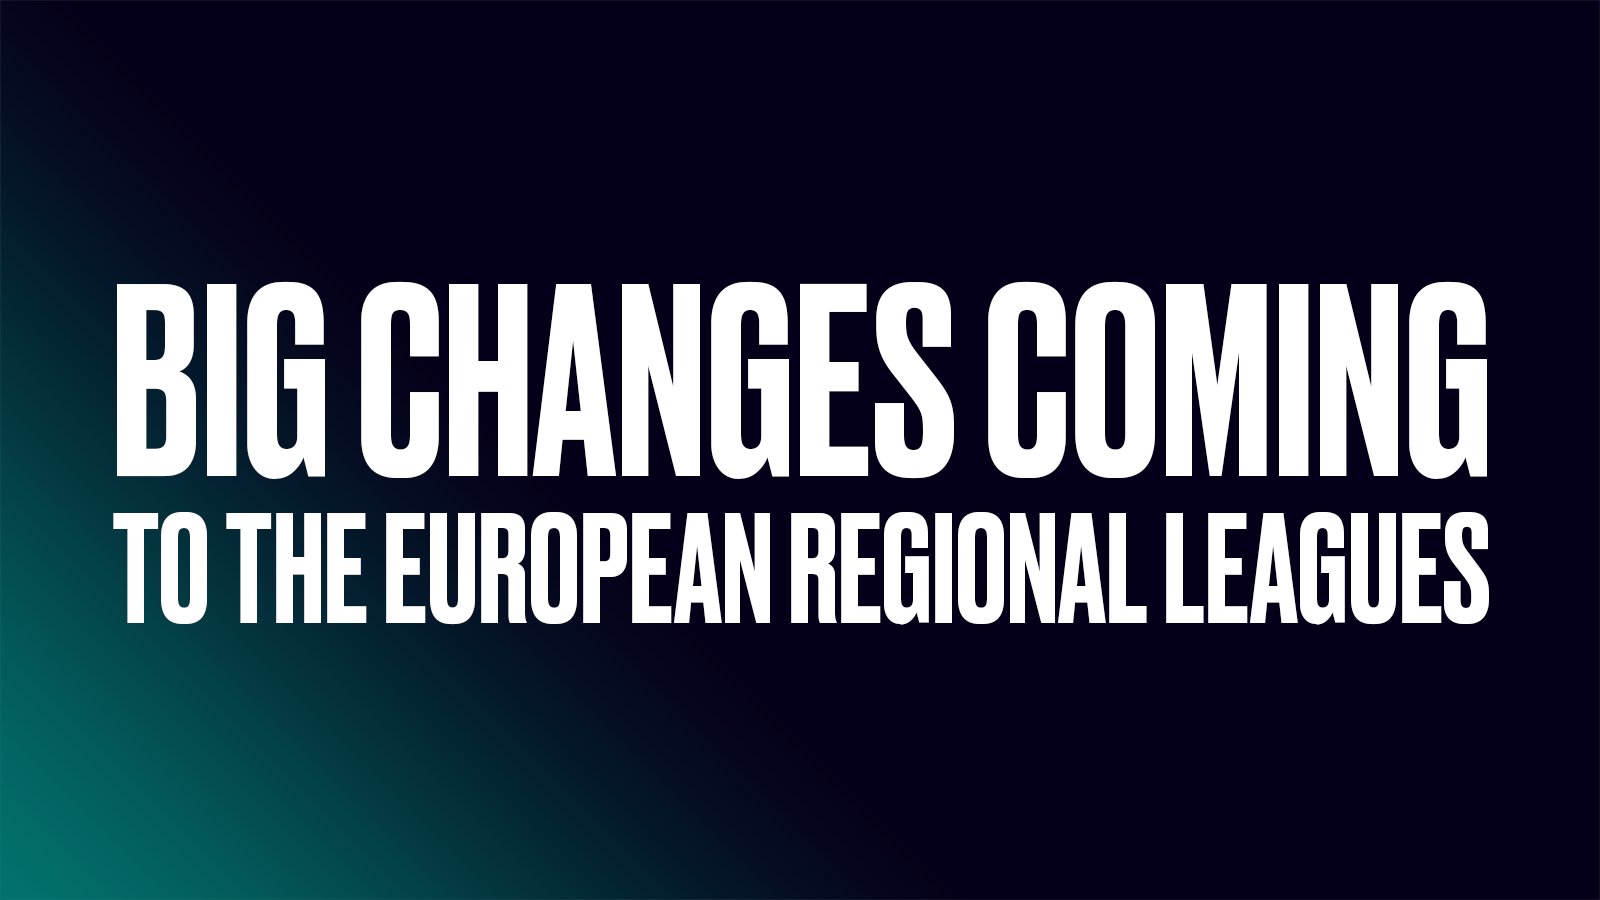 Evropské League of Legends opět o něco povyroste. Riot Games chce podpořit regionální ligy